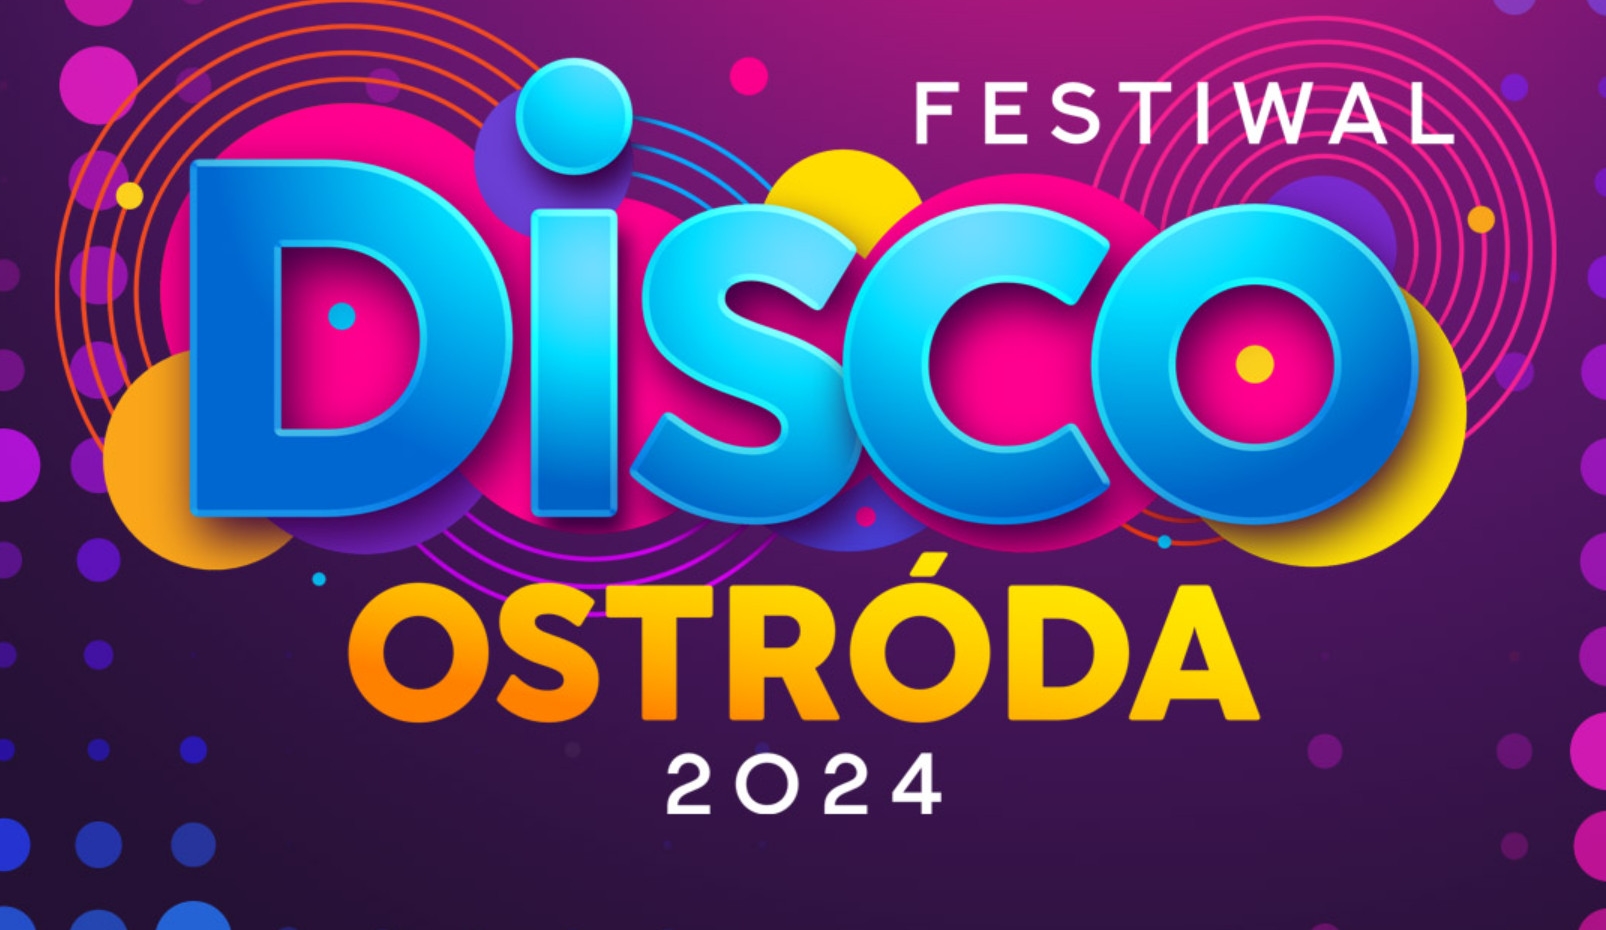 Impreza roku?! Festiwal Disco Ostróda 2024 pod patronatem Polo TV, Disco Polo Music oraz Disco-Polo.info! Co będzie się działo?! 